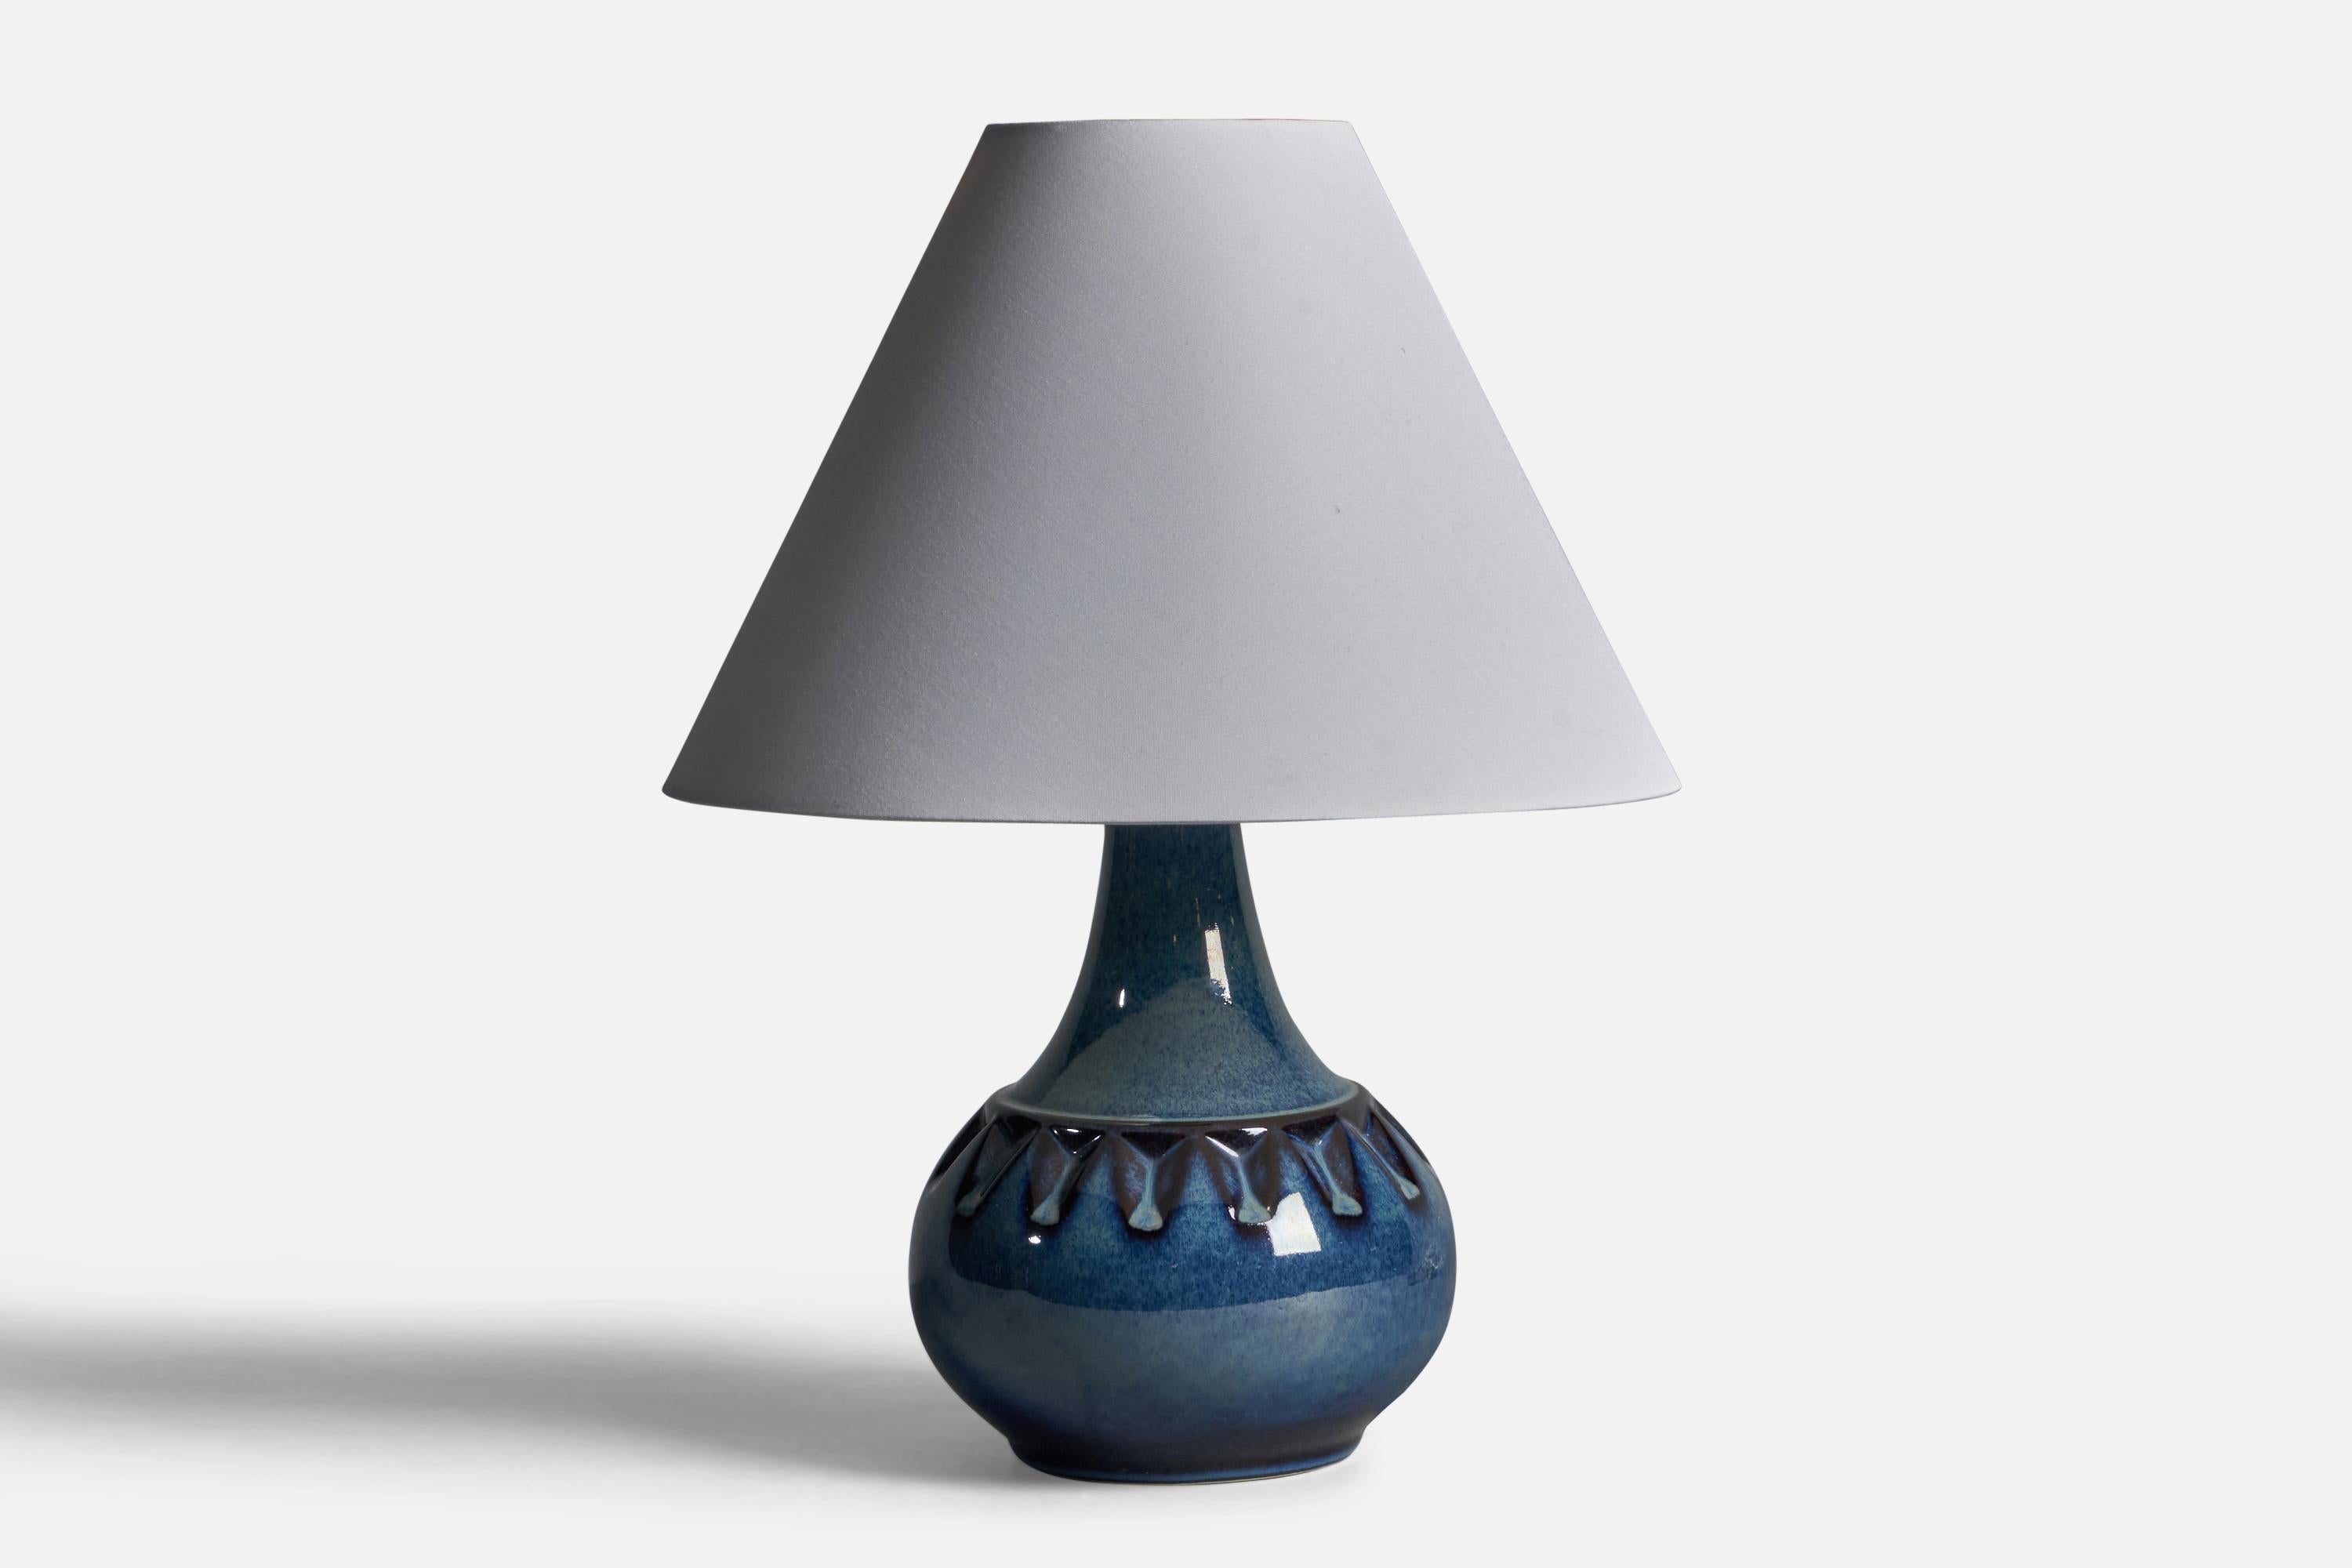 Tischlampe aus blau glasiertem Steingut, entworfen und hergestellt von Søholm, Bornholm, Dänemark, 1960er Jahre.

Abmessungen der Lampe (Zoll): 10,25